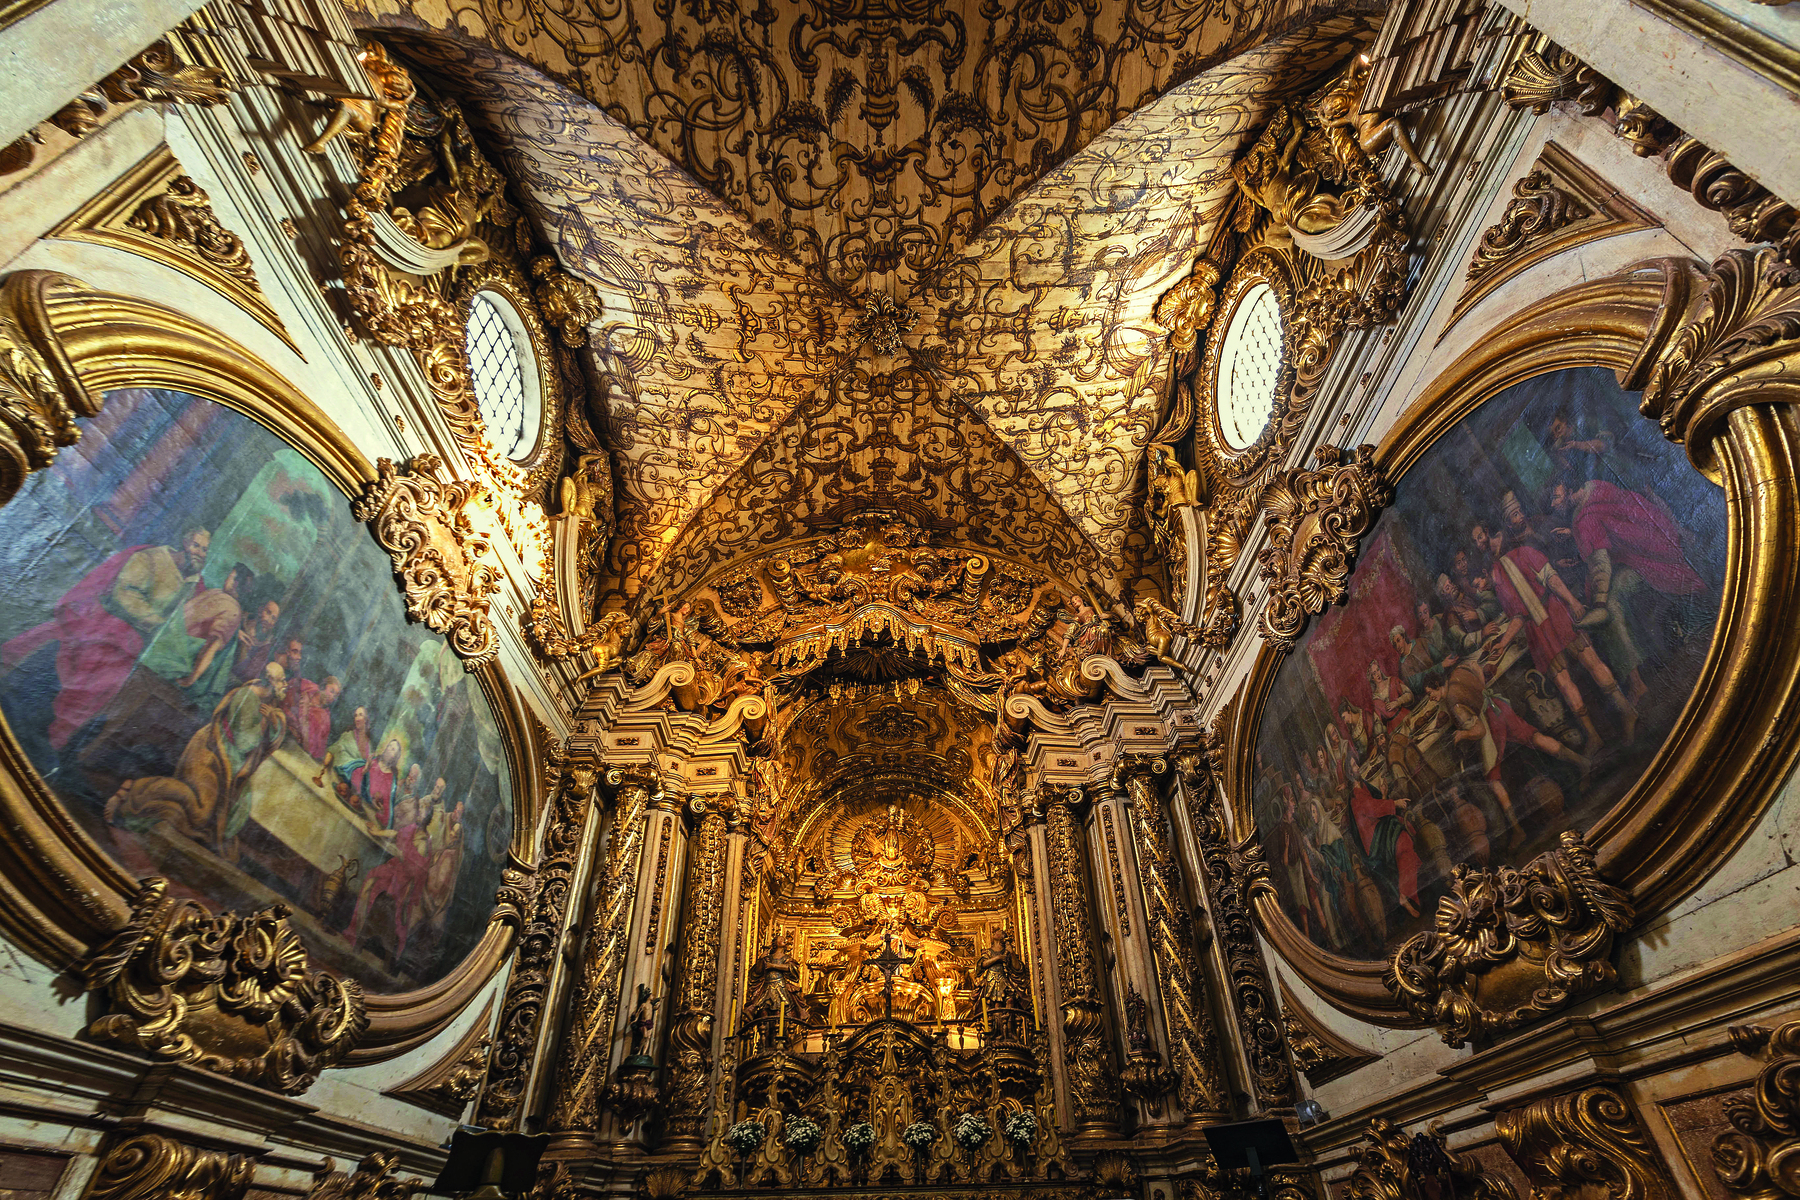 Fotografia. Vista parcial do interior de uma igreja. Nas paredes há grandes pinturas com molduras e ornamentos dourados. O teto é coberto por detalhes dourados. Ao fundo, altar ricamente decorado e grandes pilastras ornamentadas douradas.